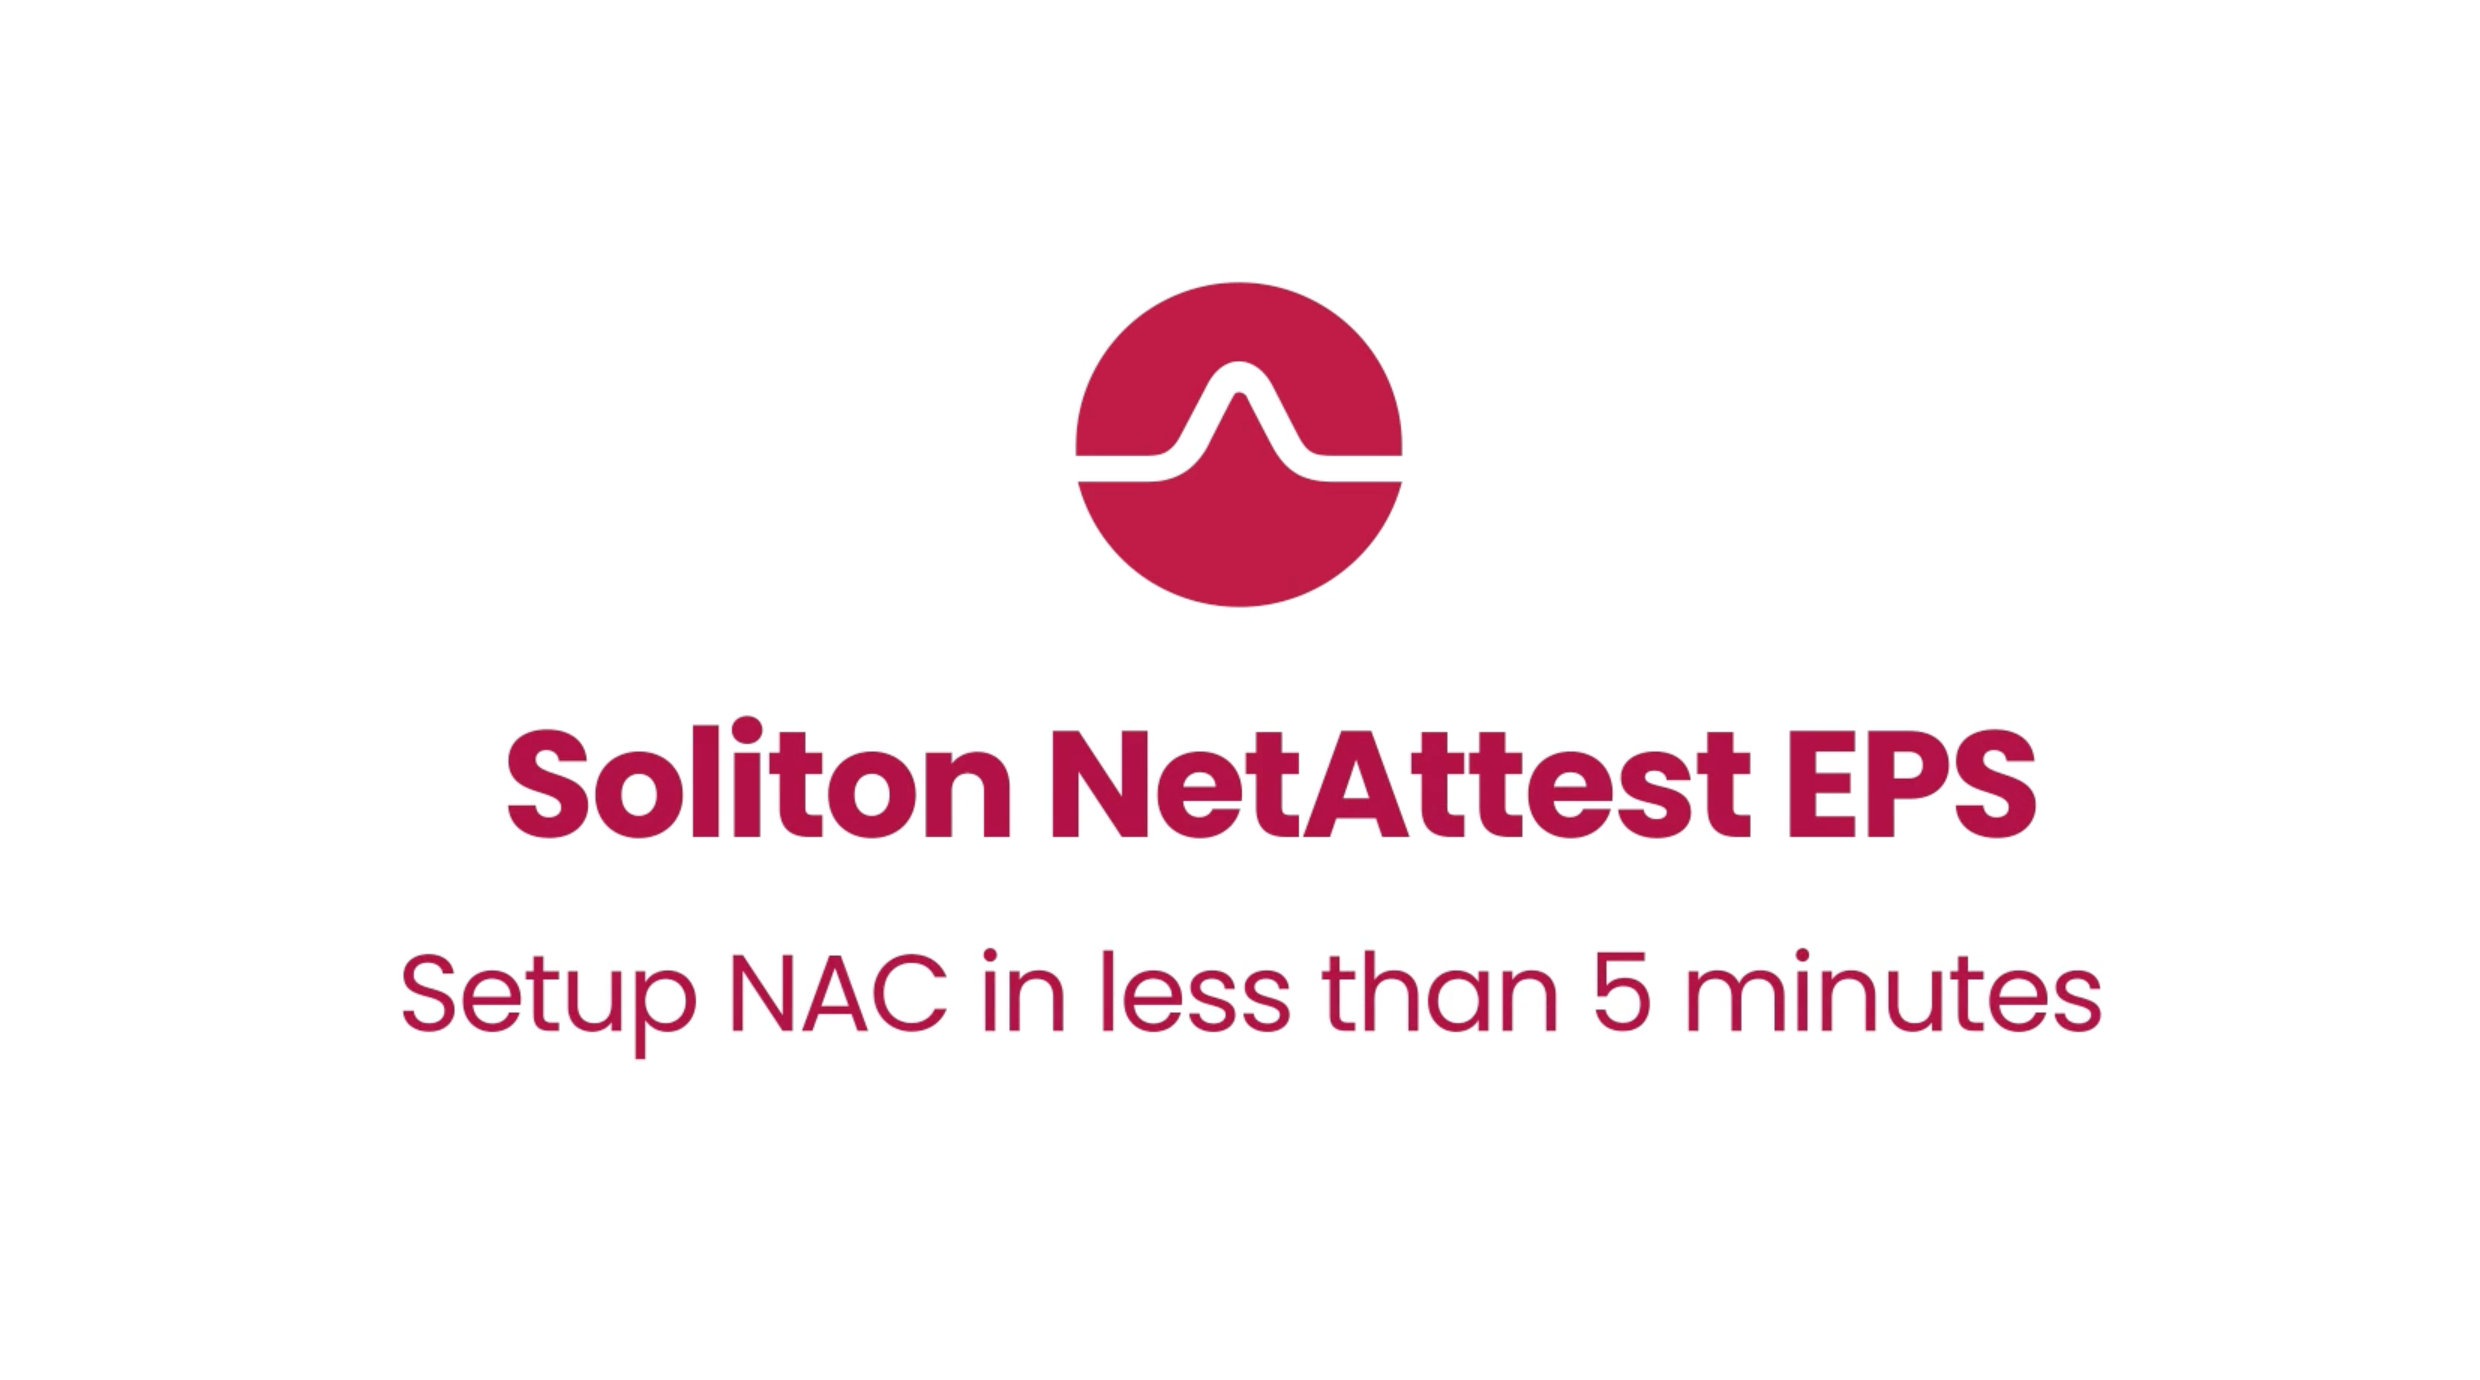 NetAttest EPS - Setup within 5 minutes